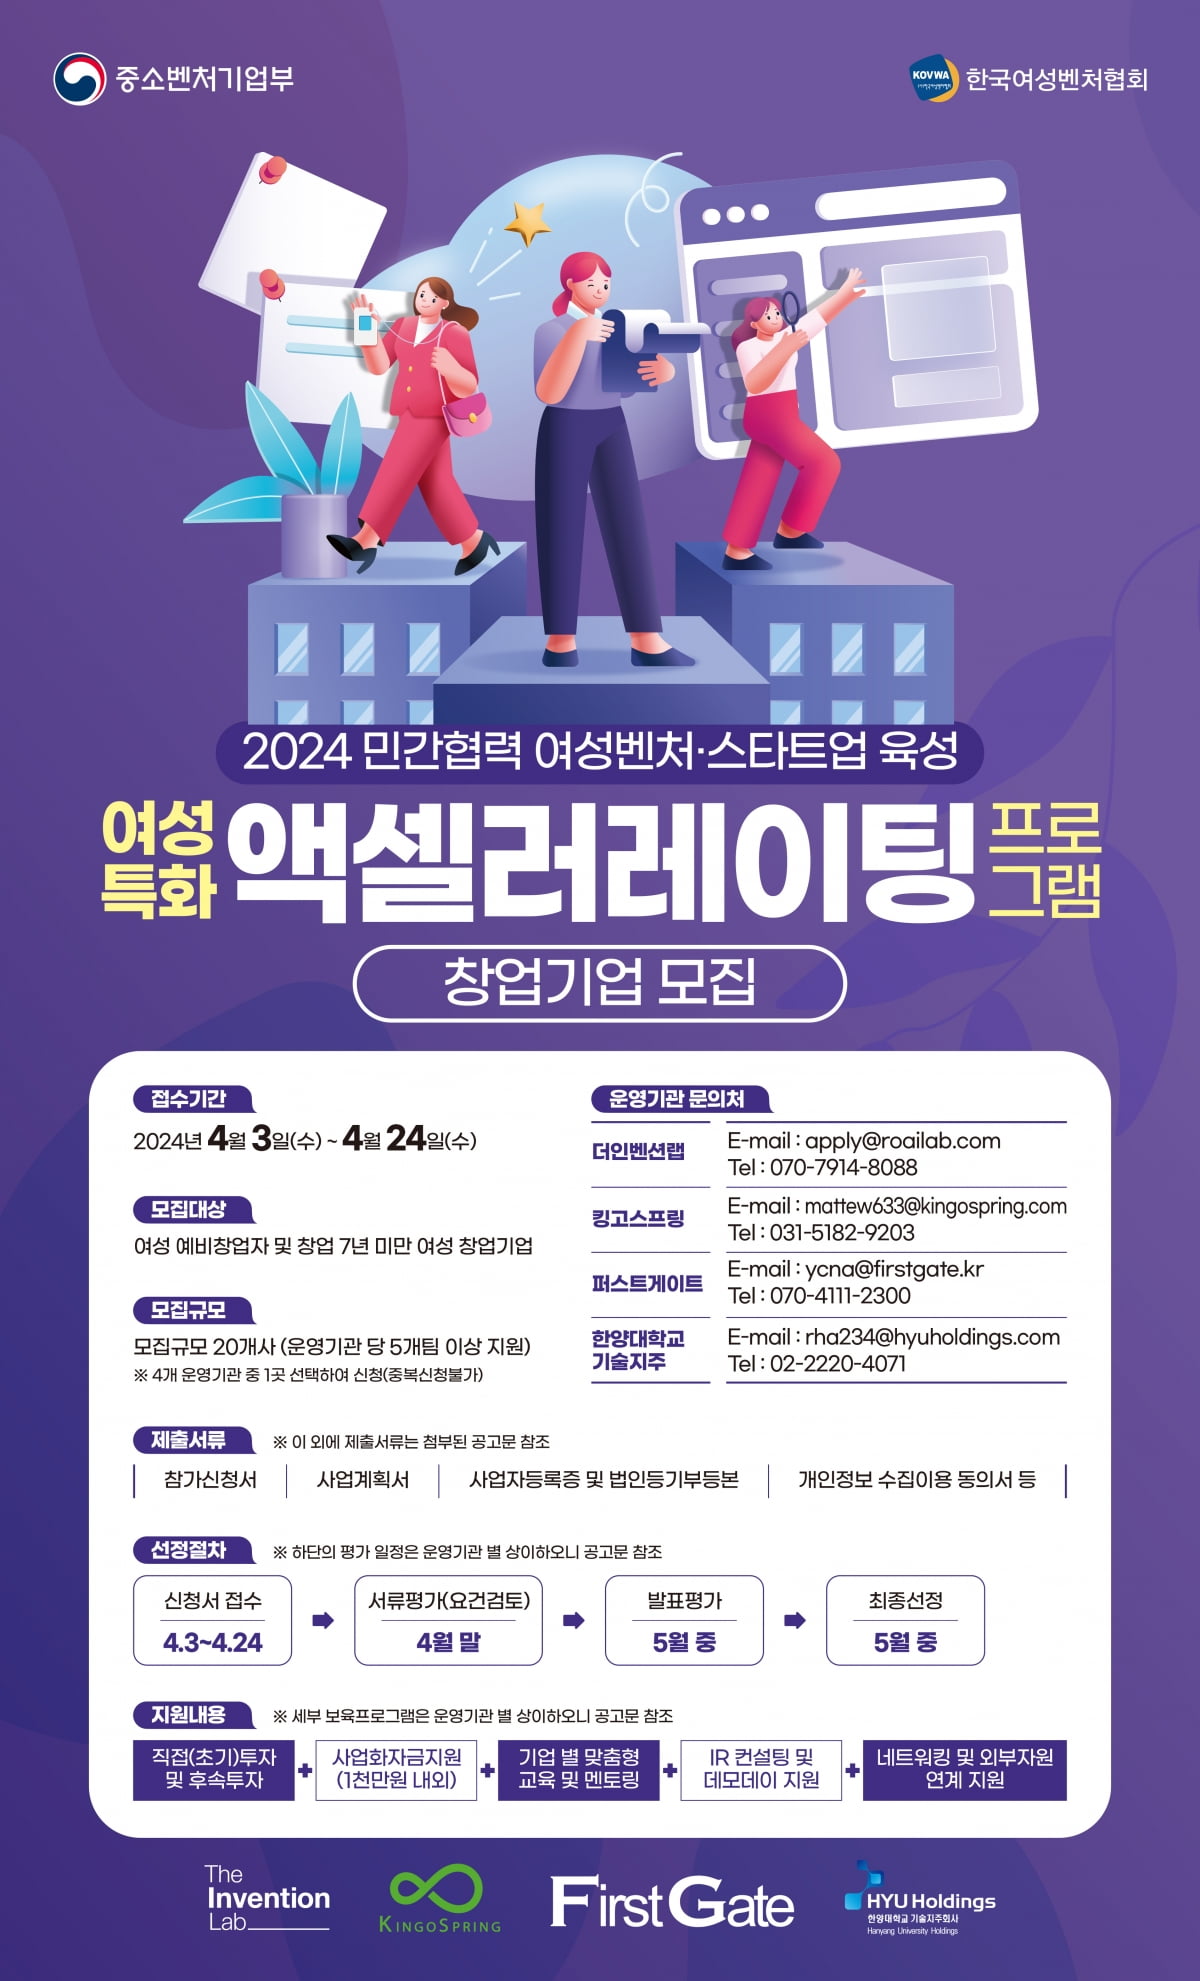 ‘2024 여성특화 액셀러레이팅 프로그램’ 참여기업 모집